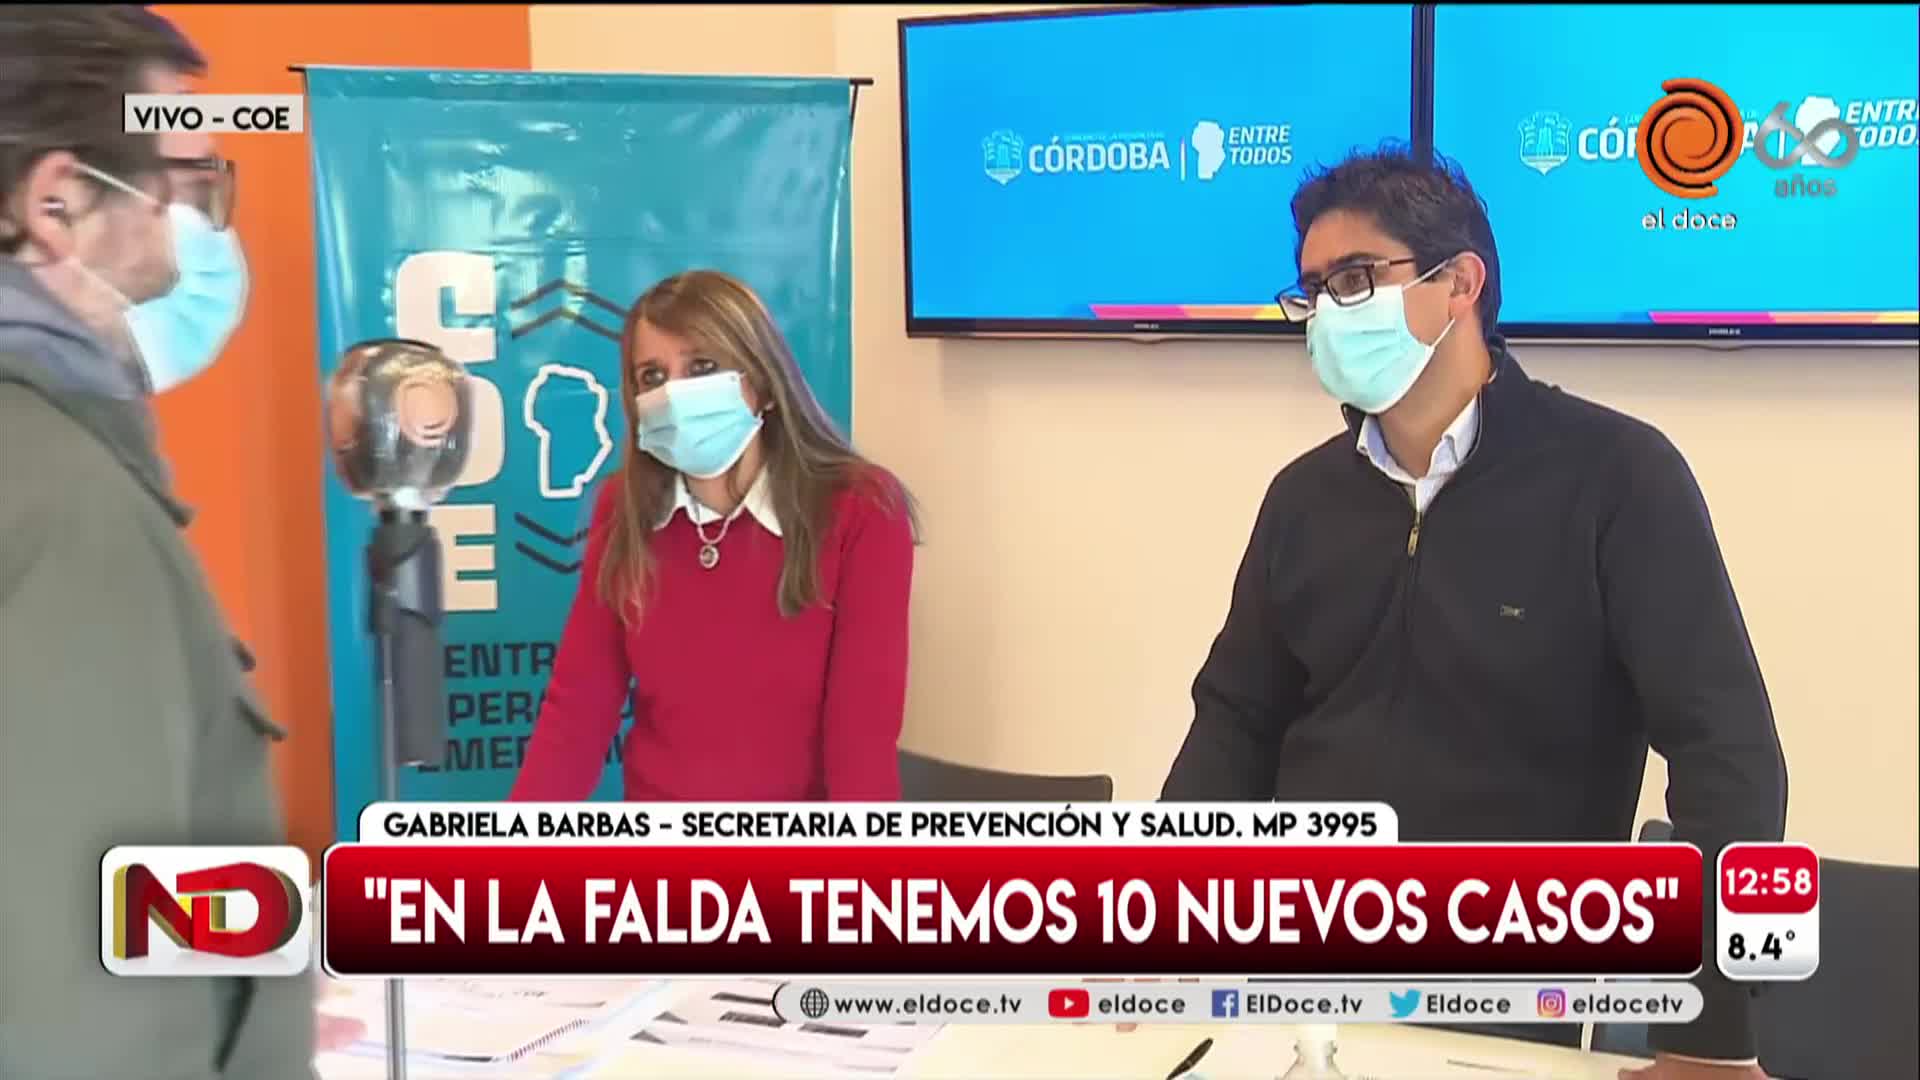 Coronavirus: la situación en Córdoba y la aclaración sobre la cuarentena